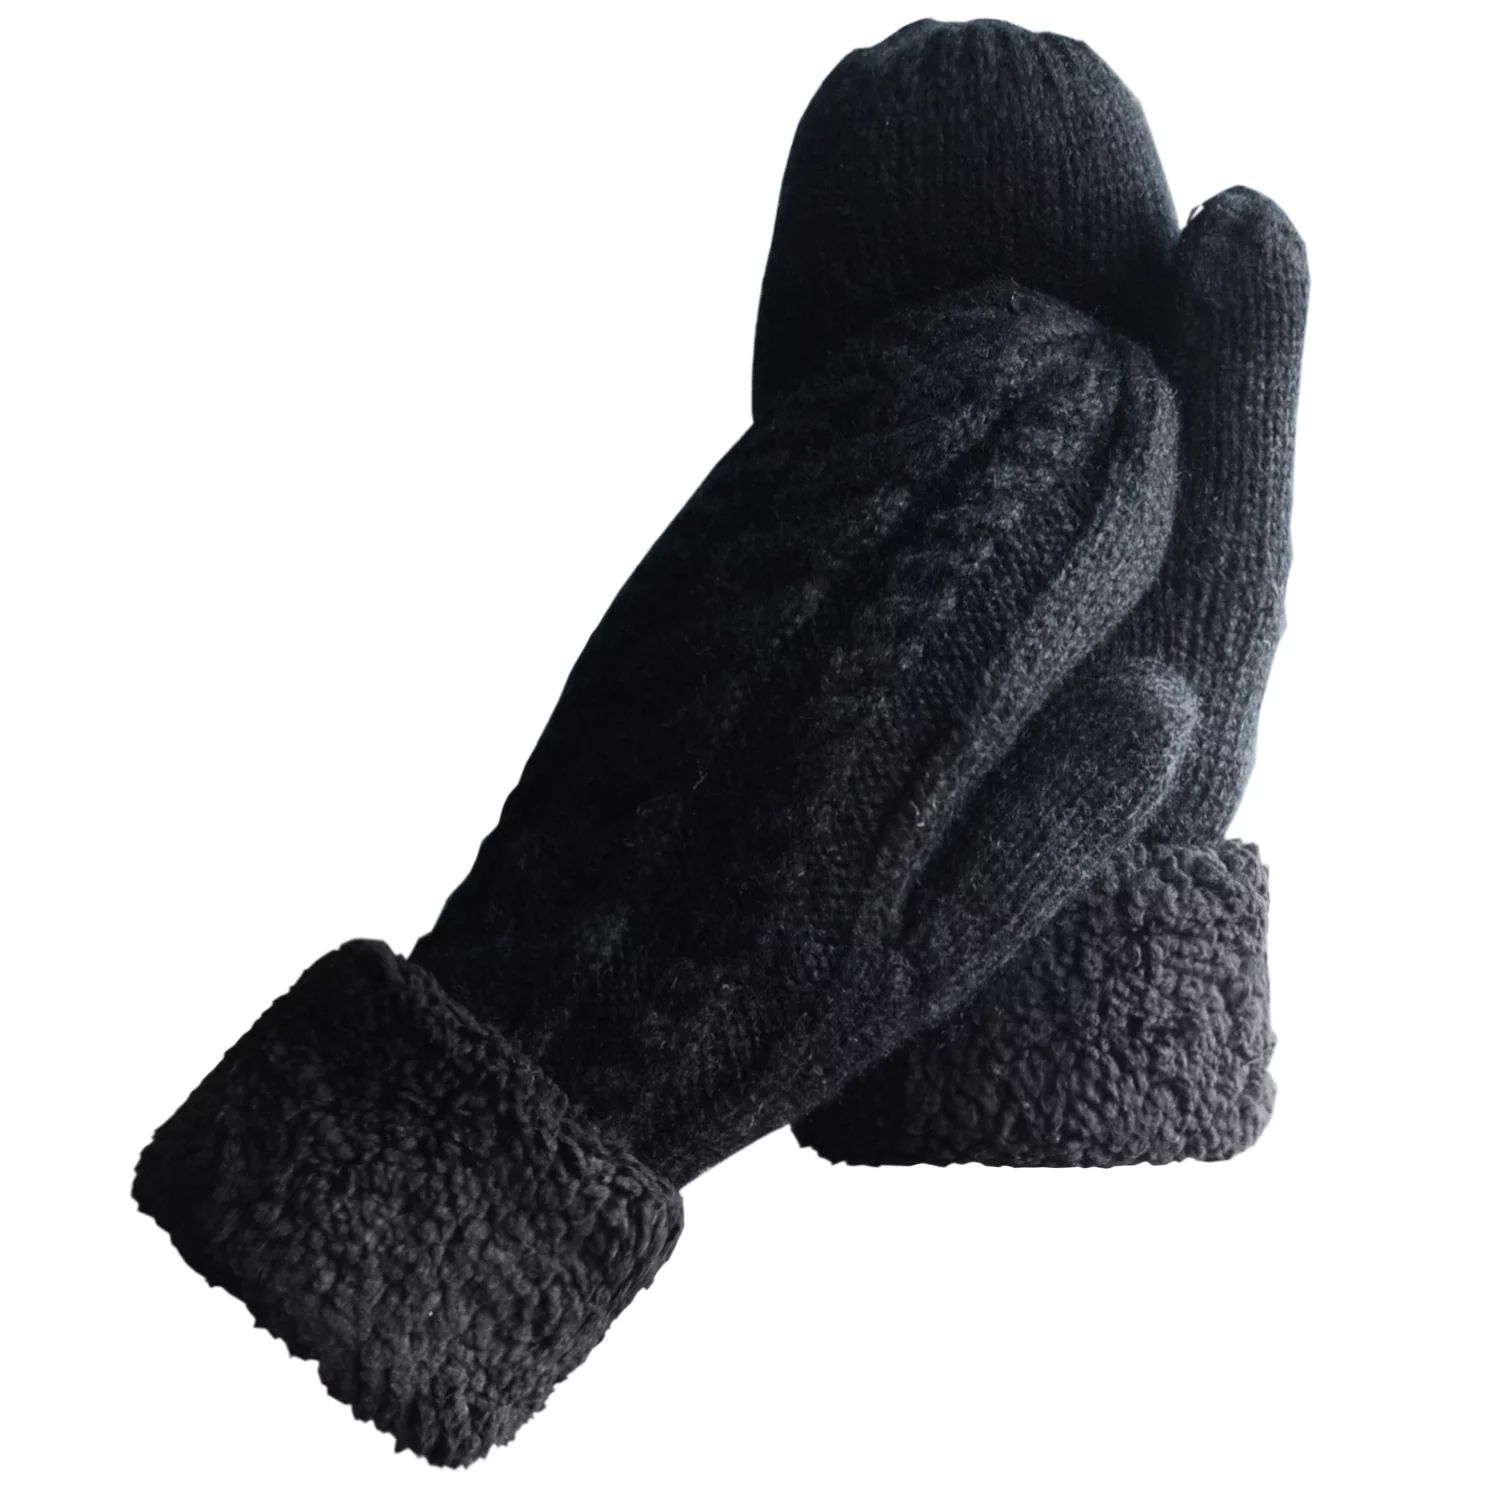 Whiteleopard Women's Winter Gloves Warm Lining Mittens- Cozy Wool Knit Thick Gloves Novelty Mitte... | Walmart (US)